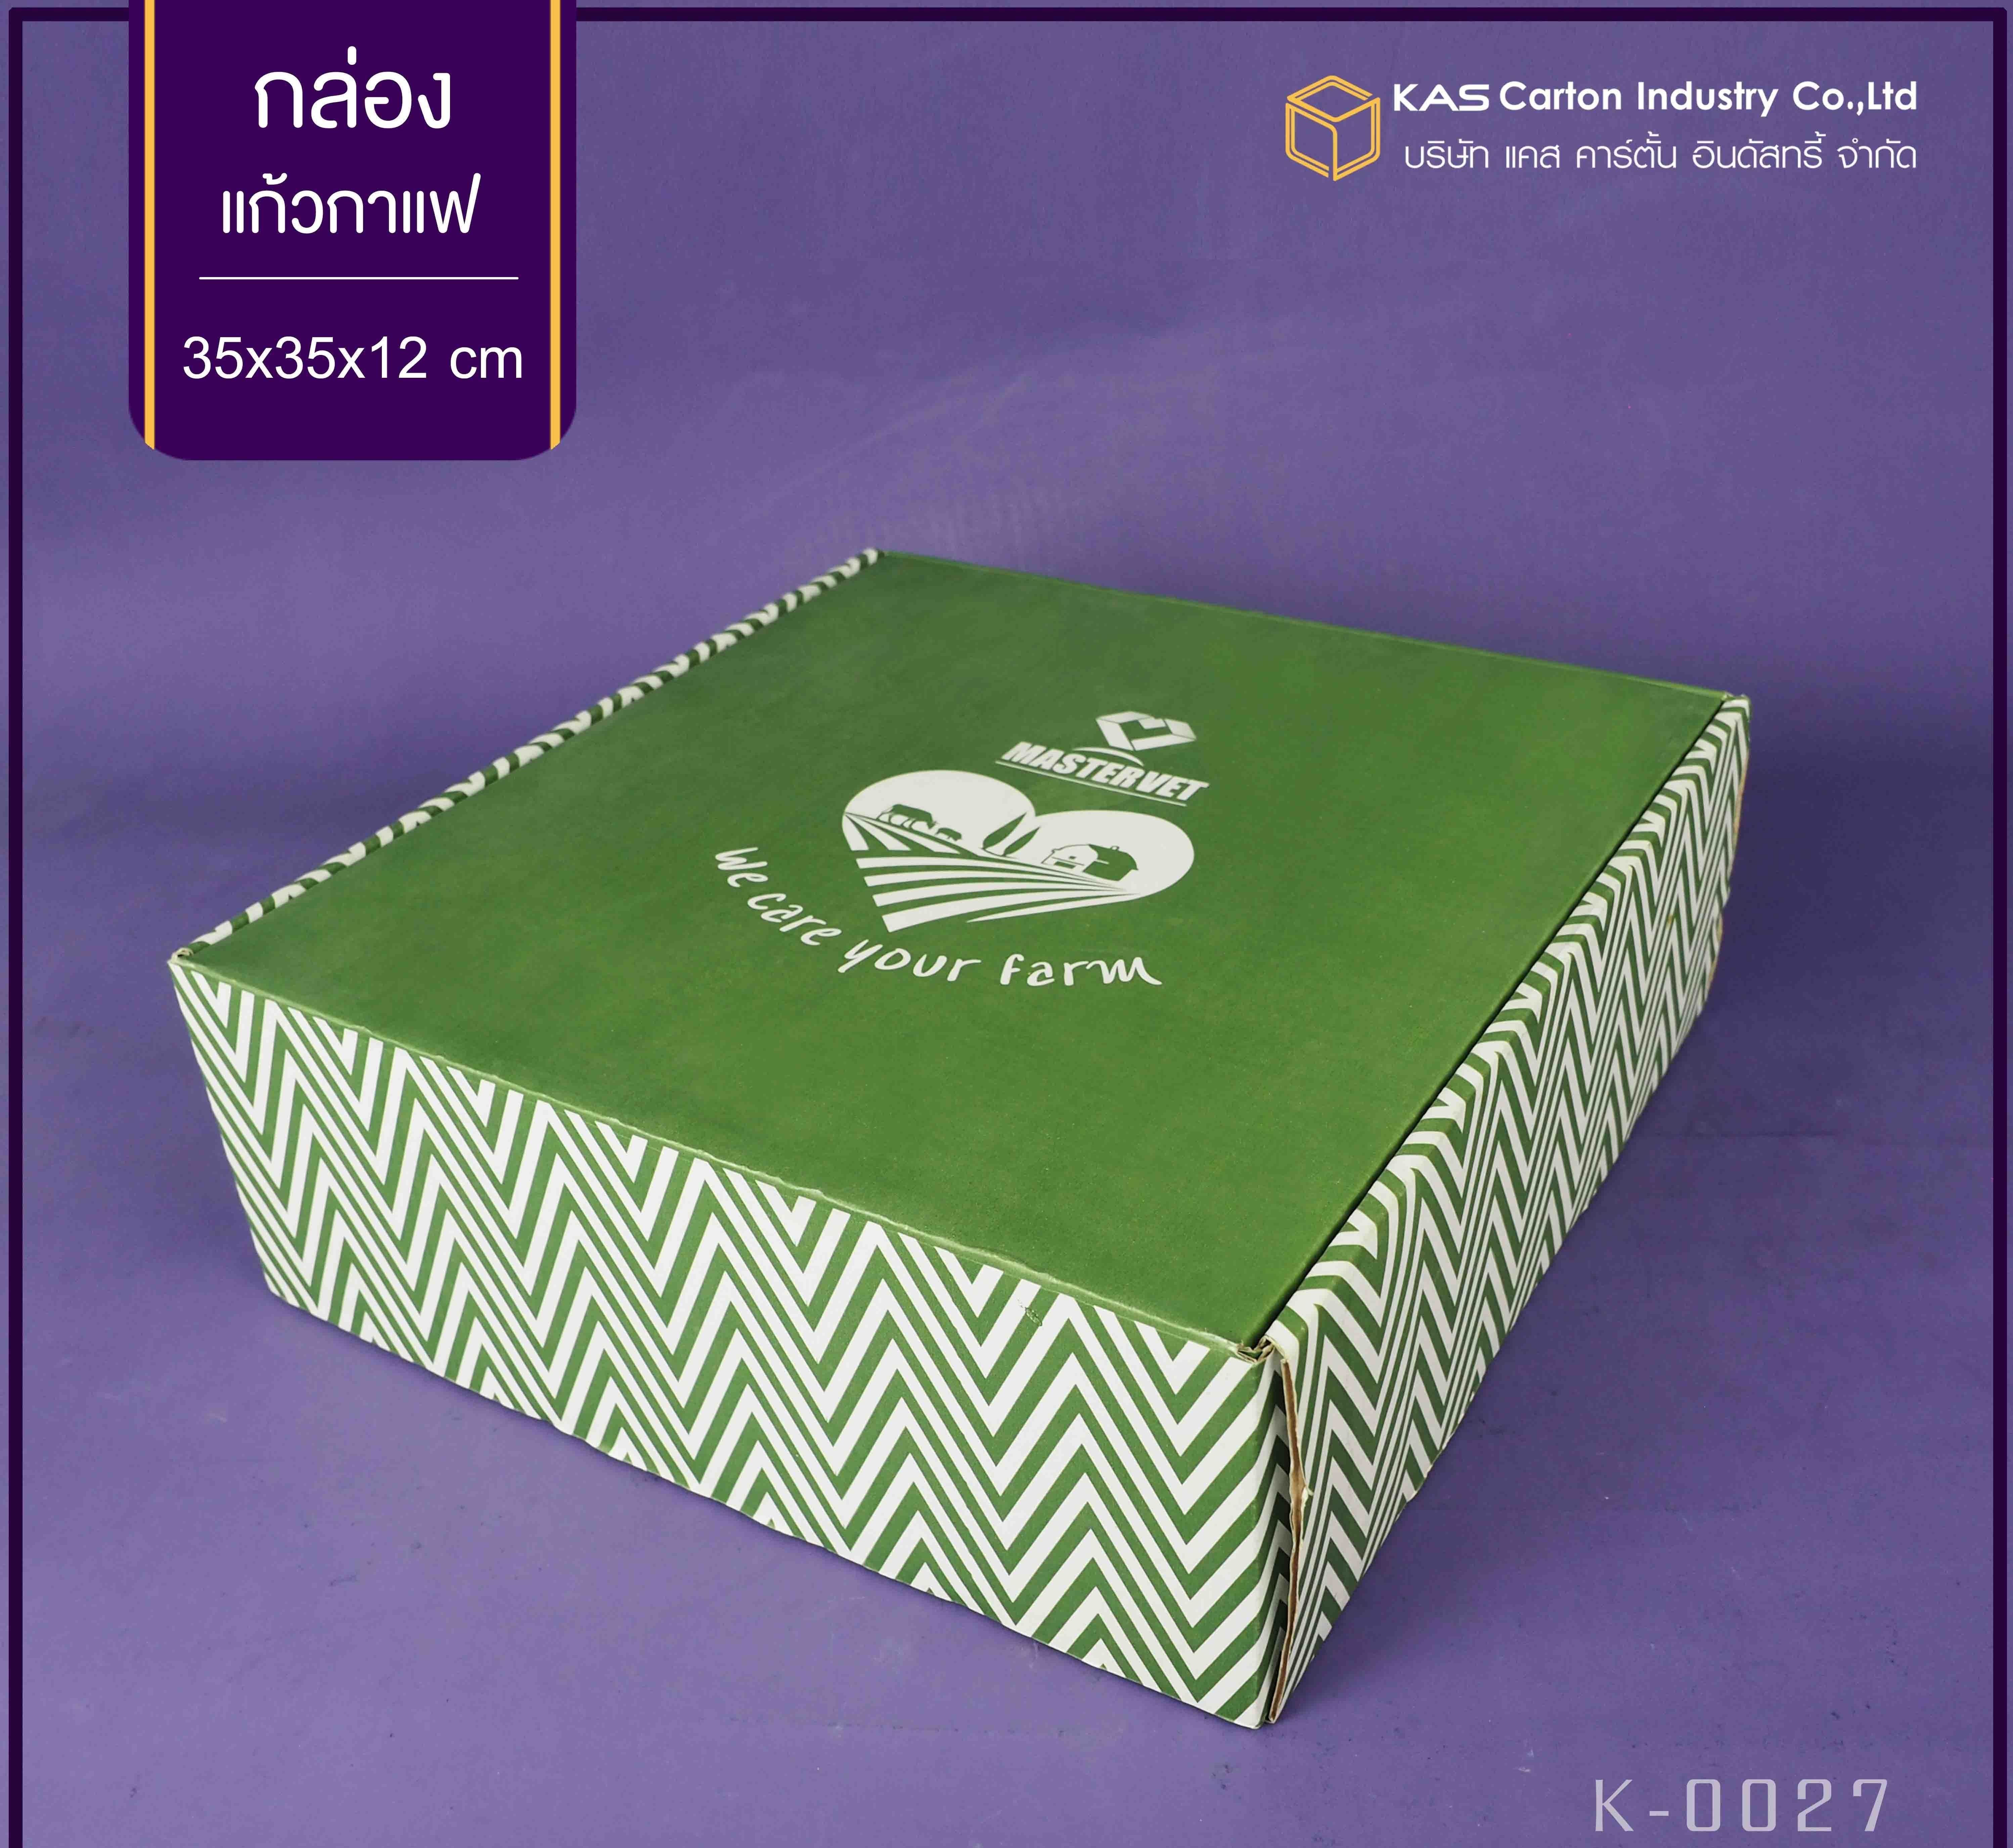 กล่องกระดาษลูกฟูก เพื่อใส่แก้วกาแฟ Mastervet
ขนาด 35x35x12 cm.
รูปแบบกล่อง ไดคัทหูช้าง+Support Box หลุมวางสินค้า
กล่องหนา 3 ชั้น ลอน B
สีกล่อง ด้านนอก170KS/ด้านใน170KS
พิมพ์ 1 สี 6 ด้าน
รหัสสินค้า K-0